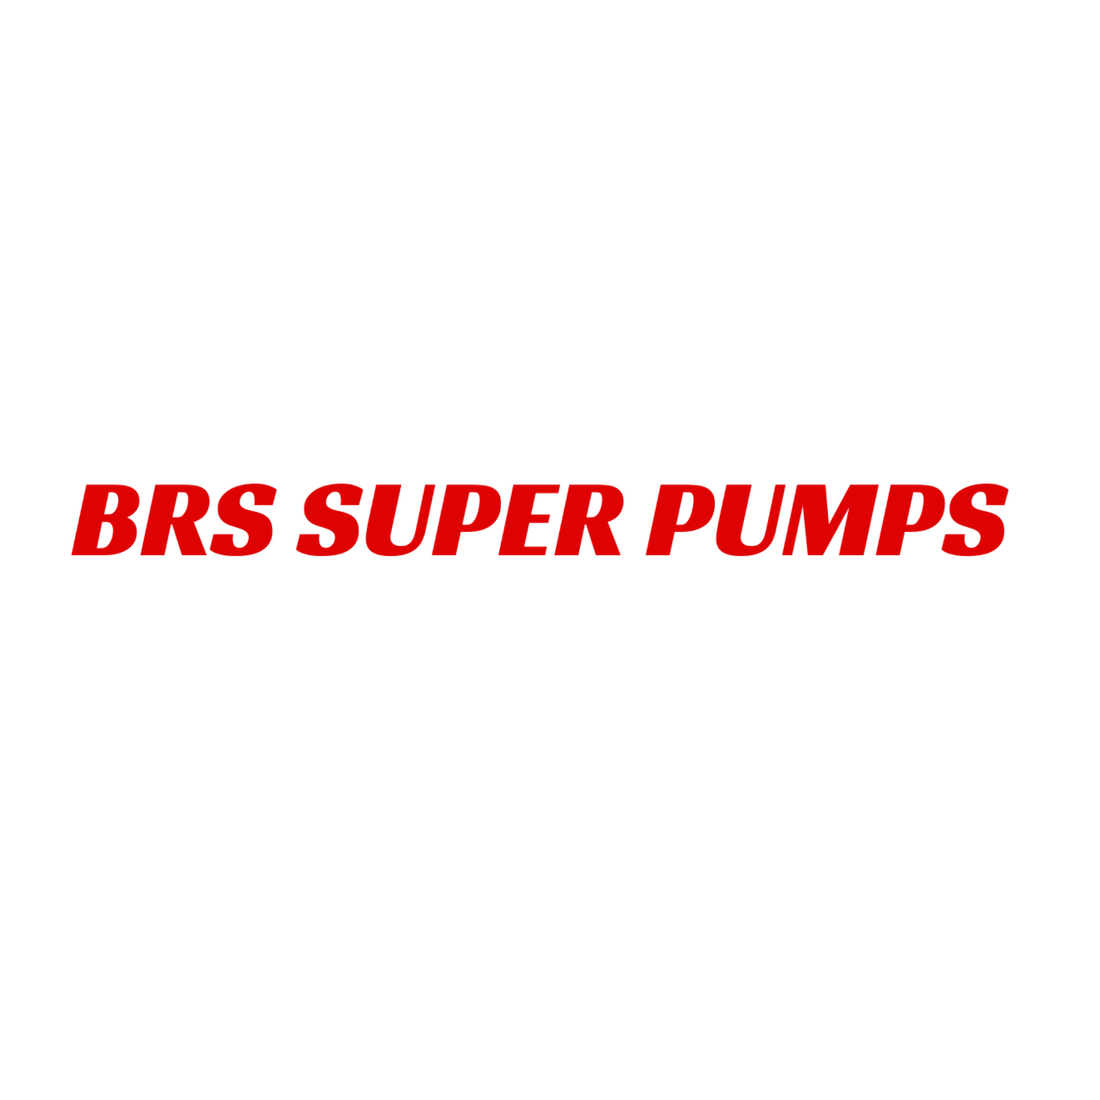 BRS Super Pumps Press Release